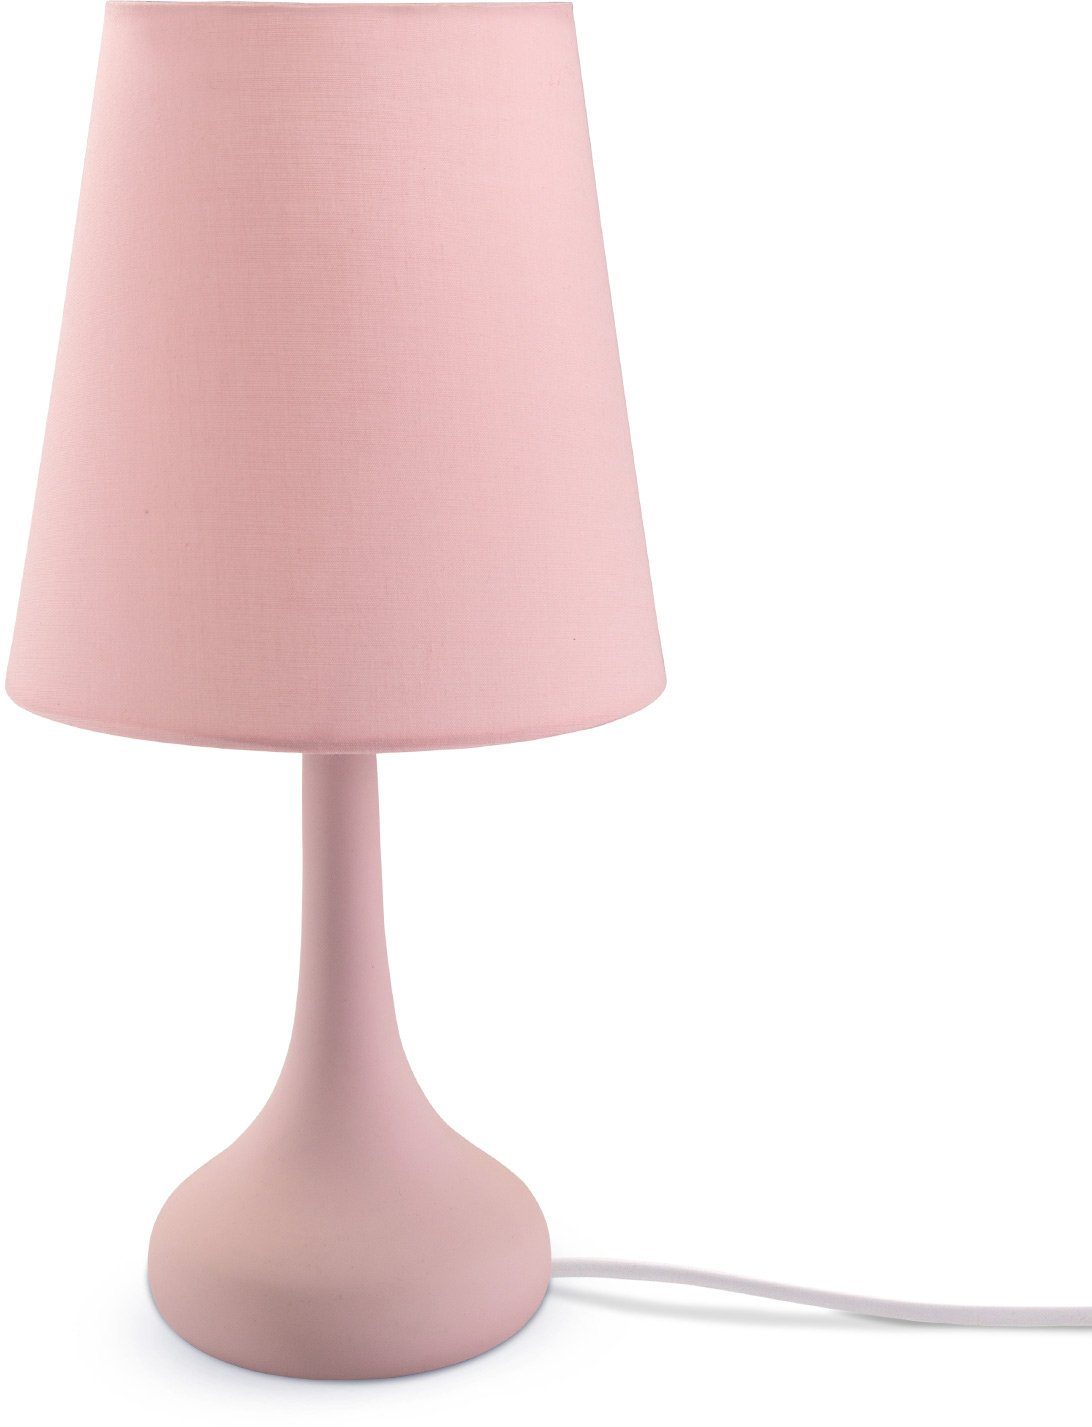 Home Lampe, Wohnzimmer u. Leuchtmittel, pink HELA, Modern LED Tischleuchte Paco Tischleuchte E14 Für ohne Kinderzimmer